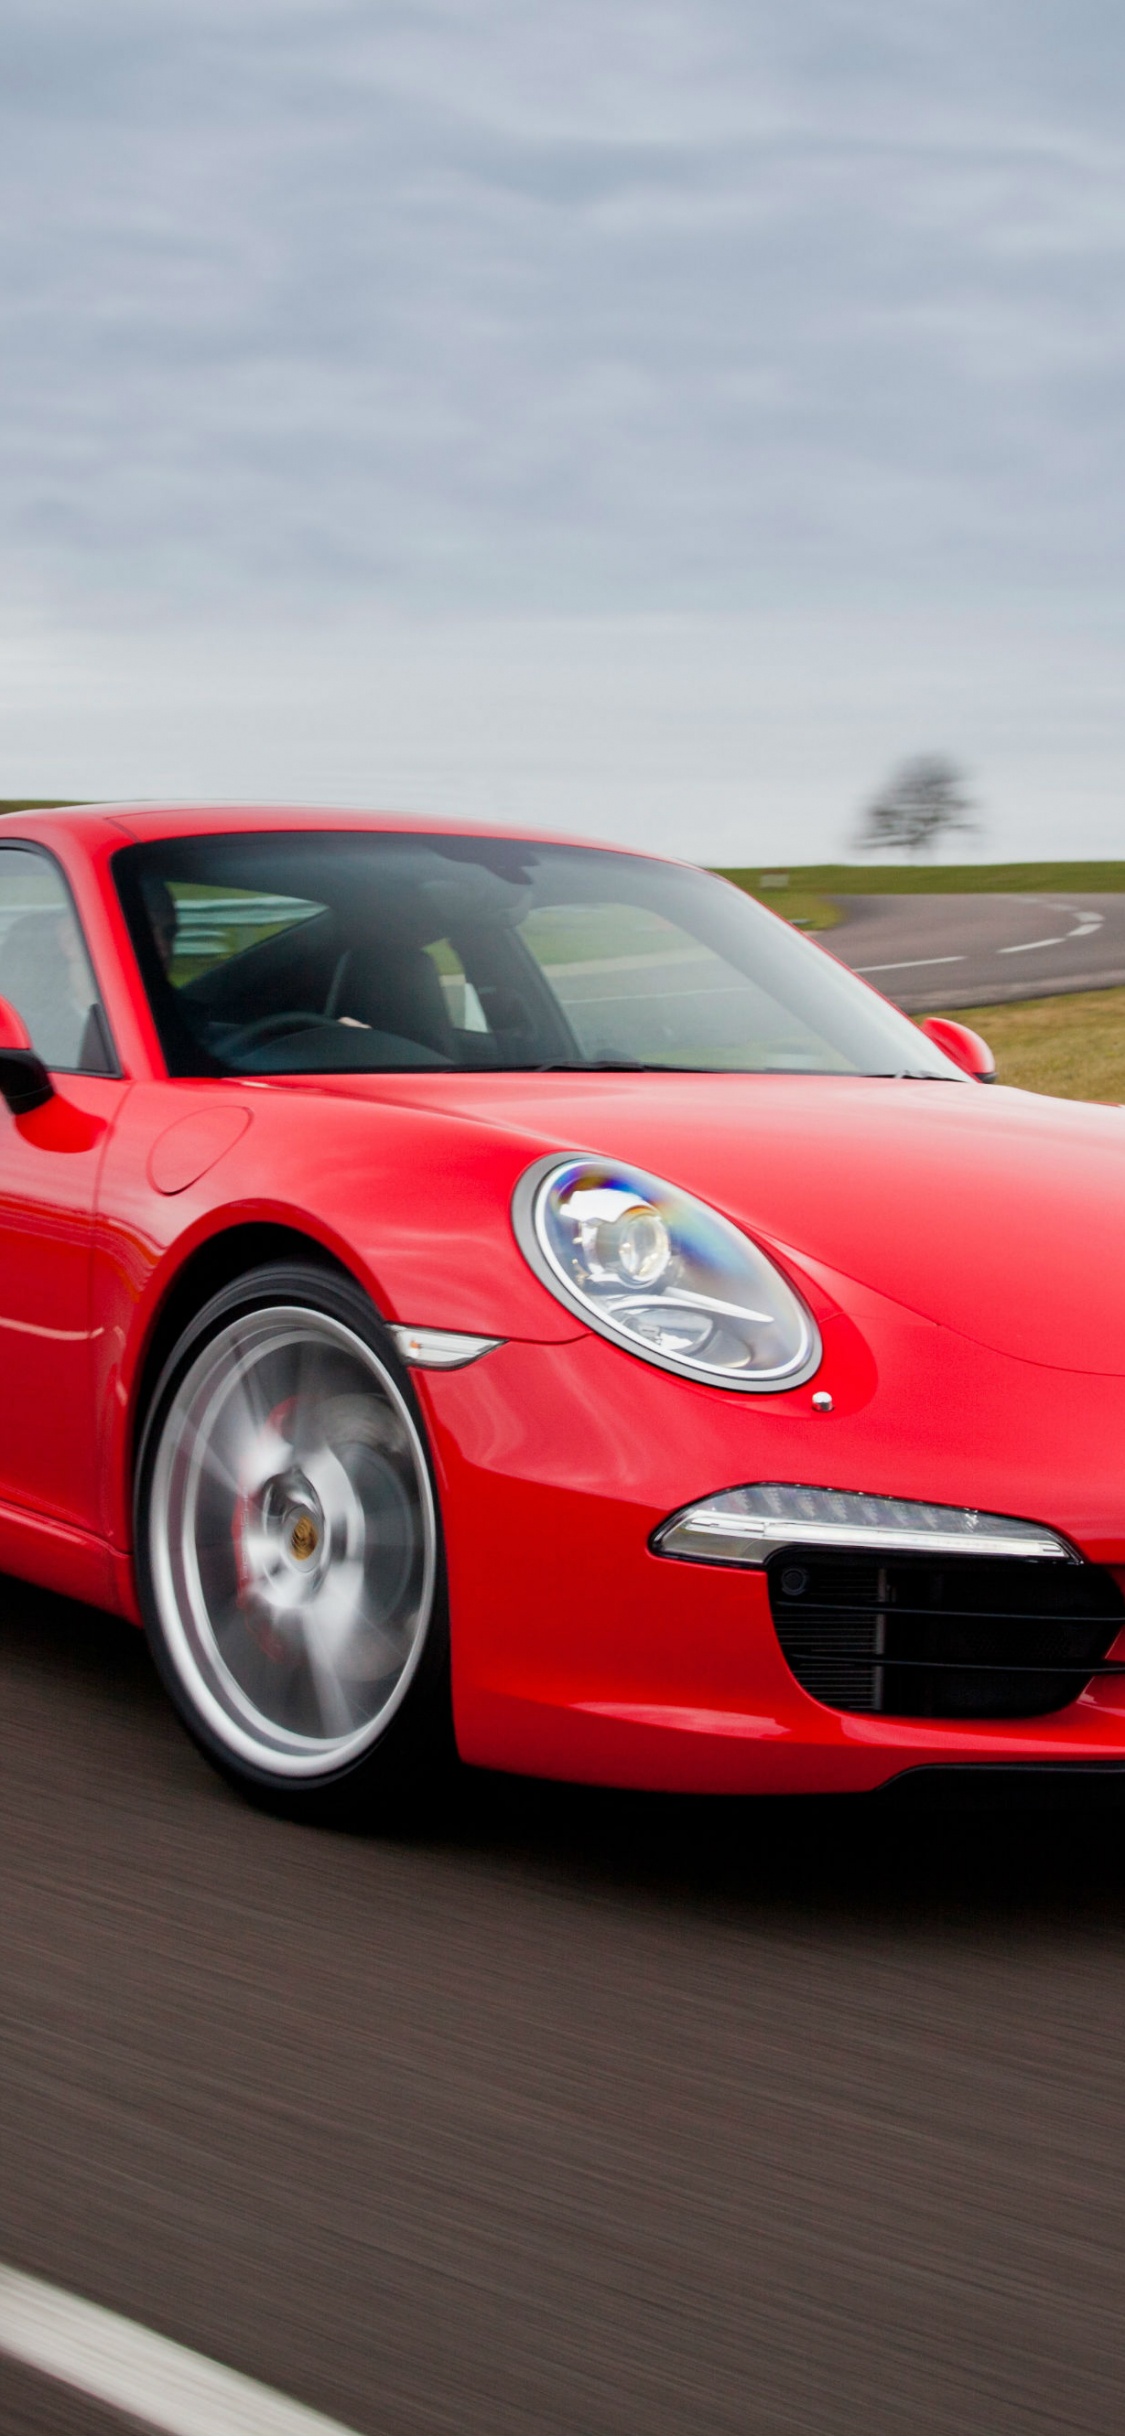 Porsche 911 Rouge Sur Route Pendant la Journée. Wallpaper in 1125x2436 Resolution